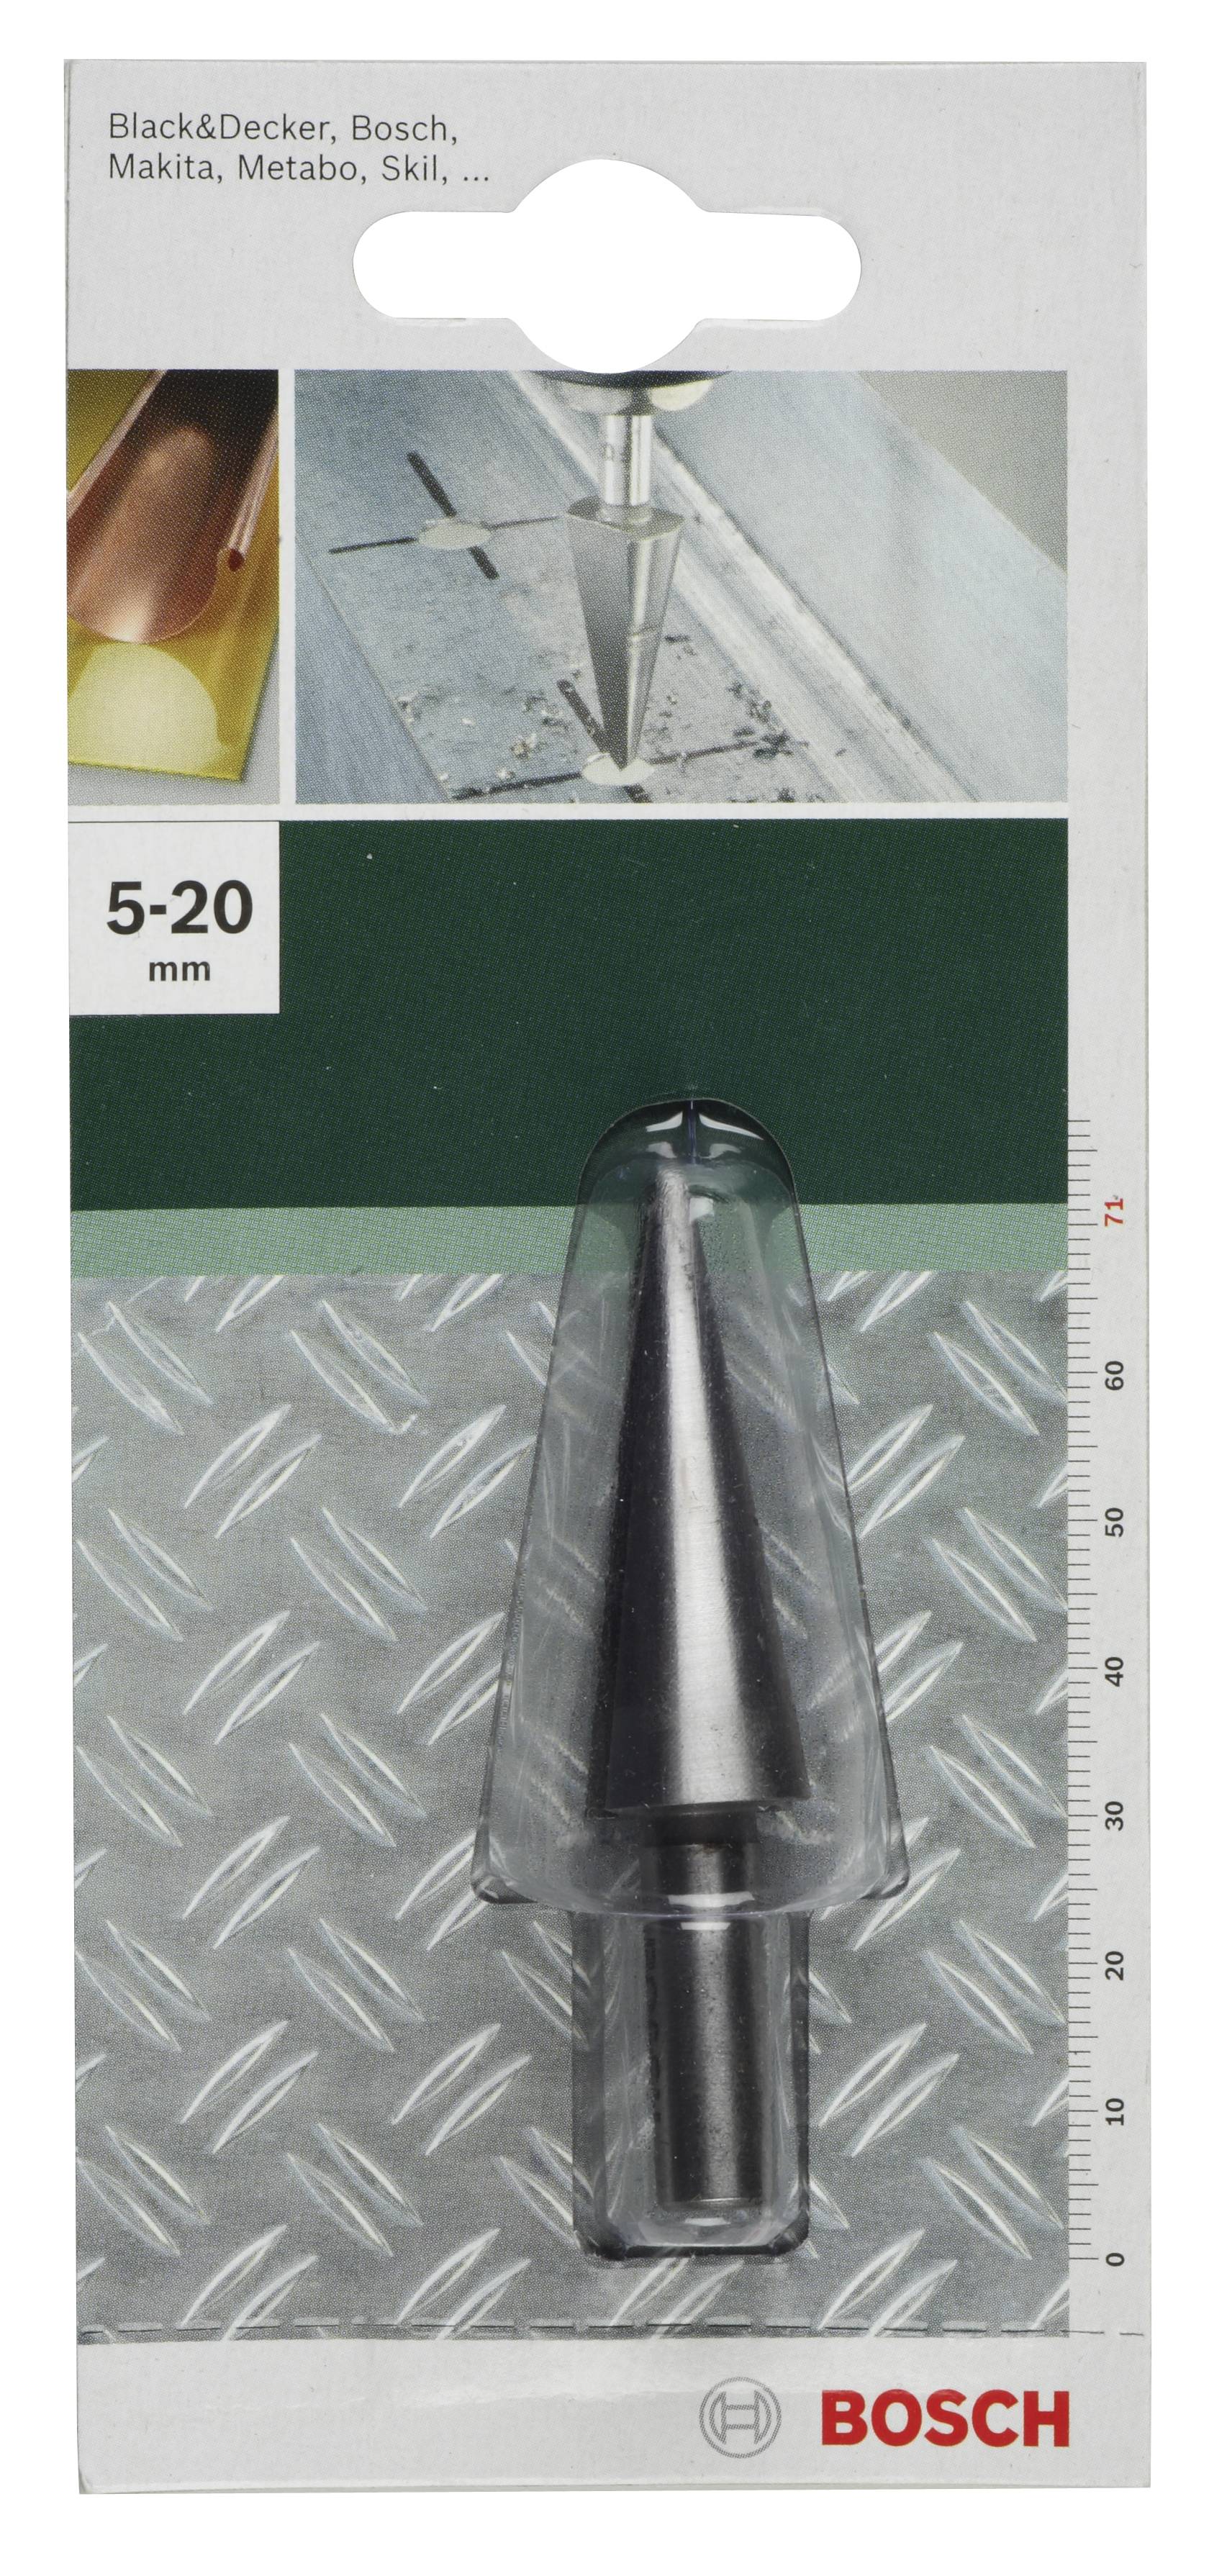 BOSCH Schälbohrer 5 - 20 mm Chrom-Vanadium-Stahl 2609255120 Gesamtlänge 71 mm Zylinderschaft 1 St. (